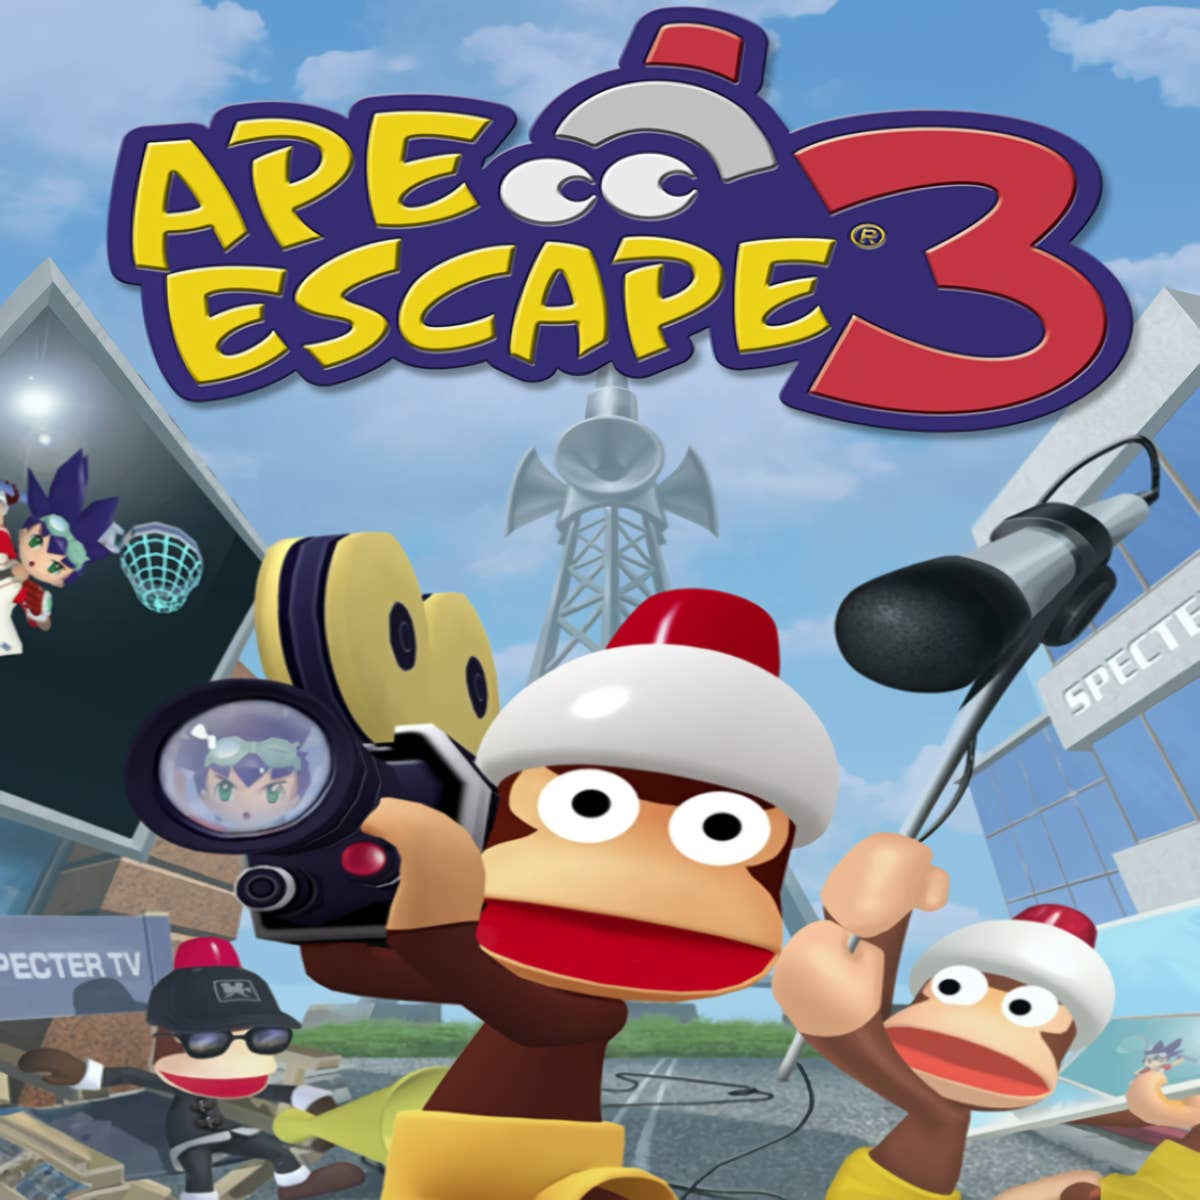 Ape Escape 3 aparece classificado no ESRB para PS4